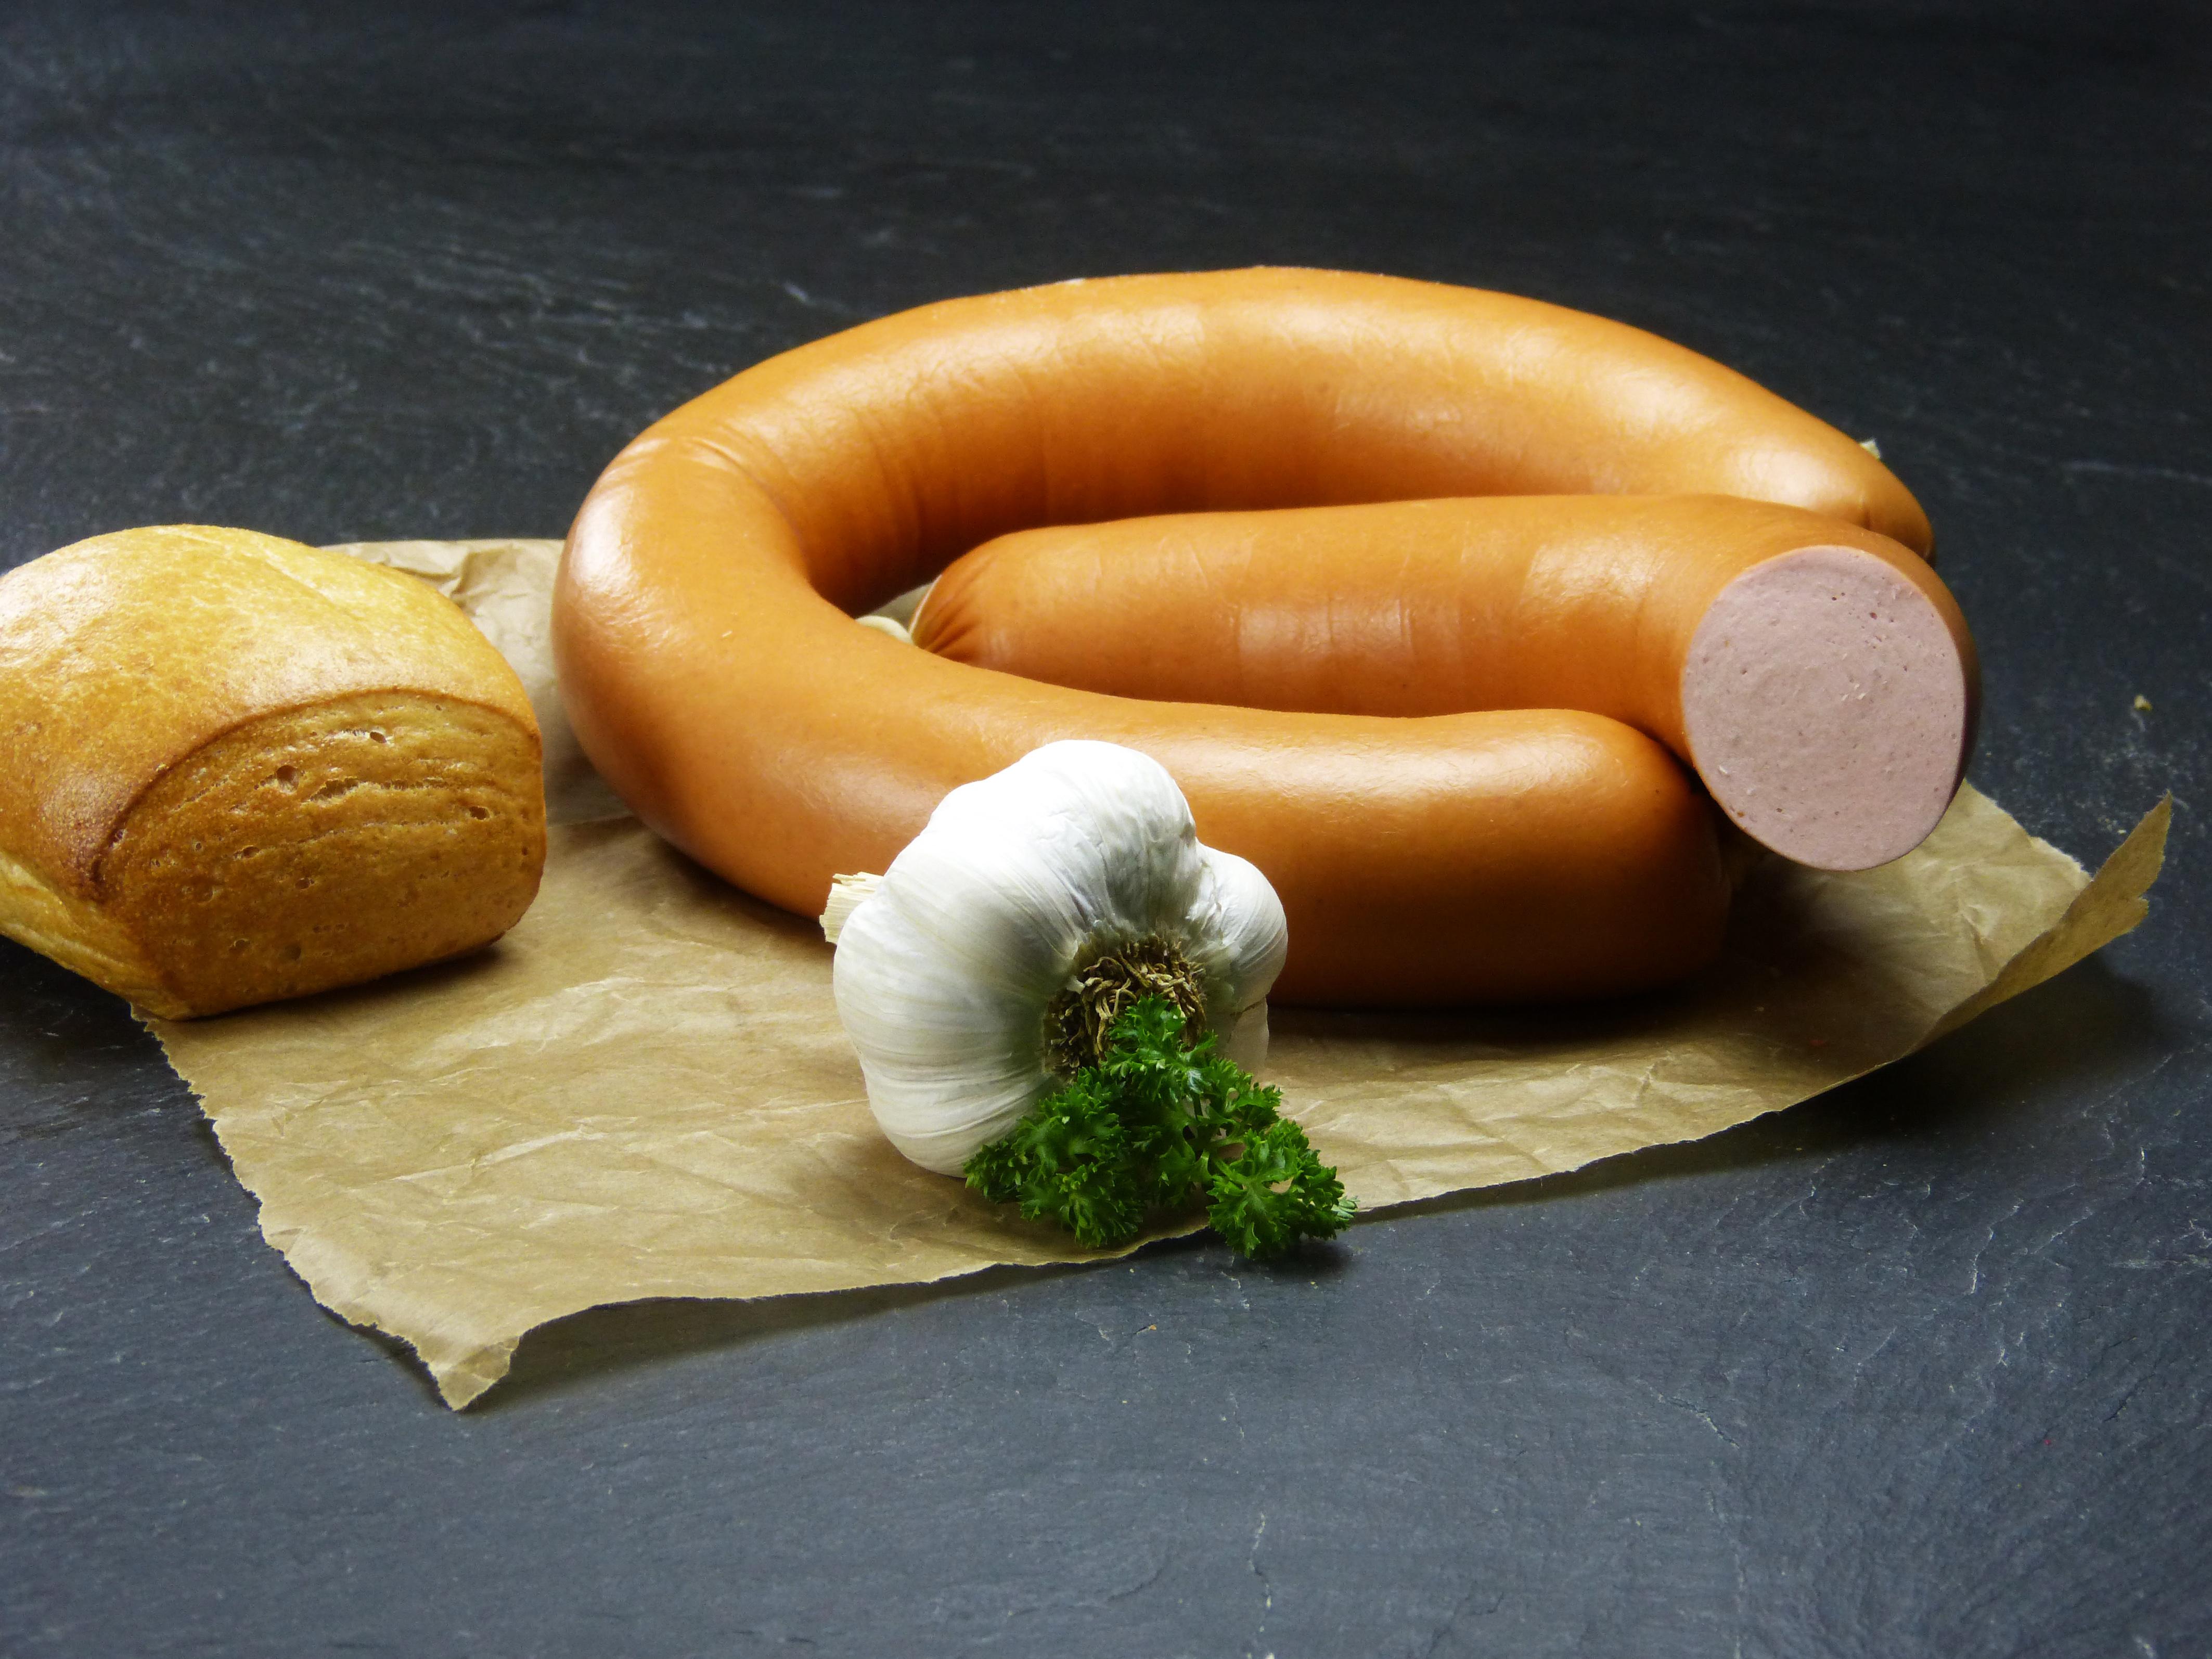 Fleischwurst im Ring mit Knoblauch - 1/2 Ring online kaufen ...